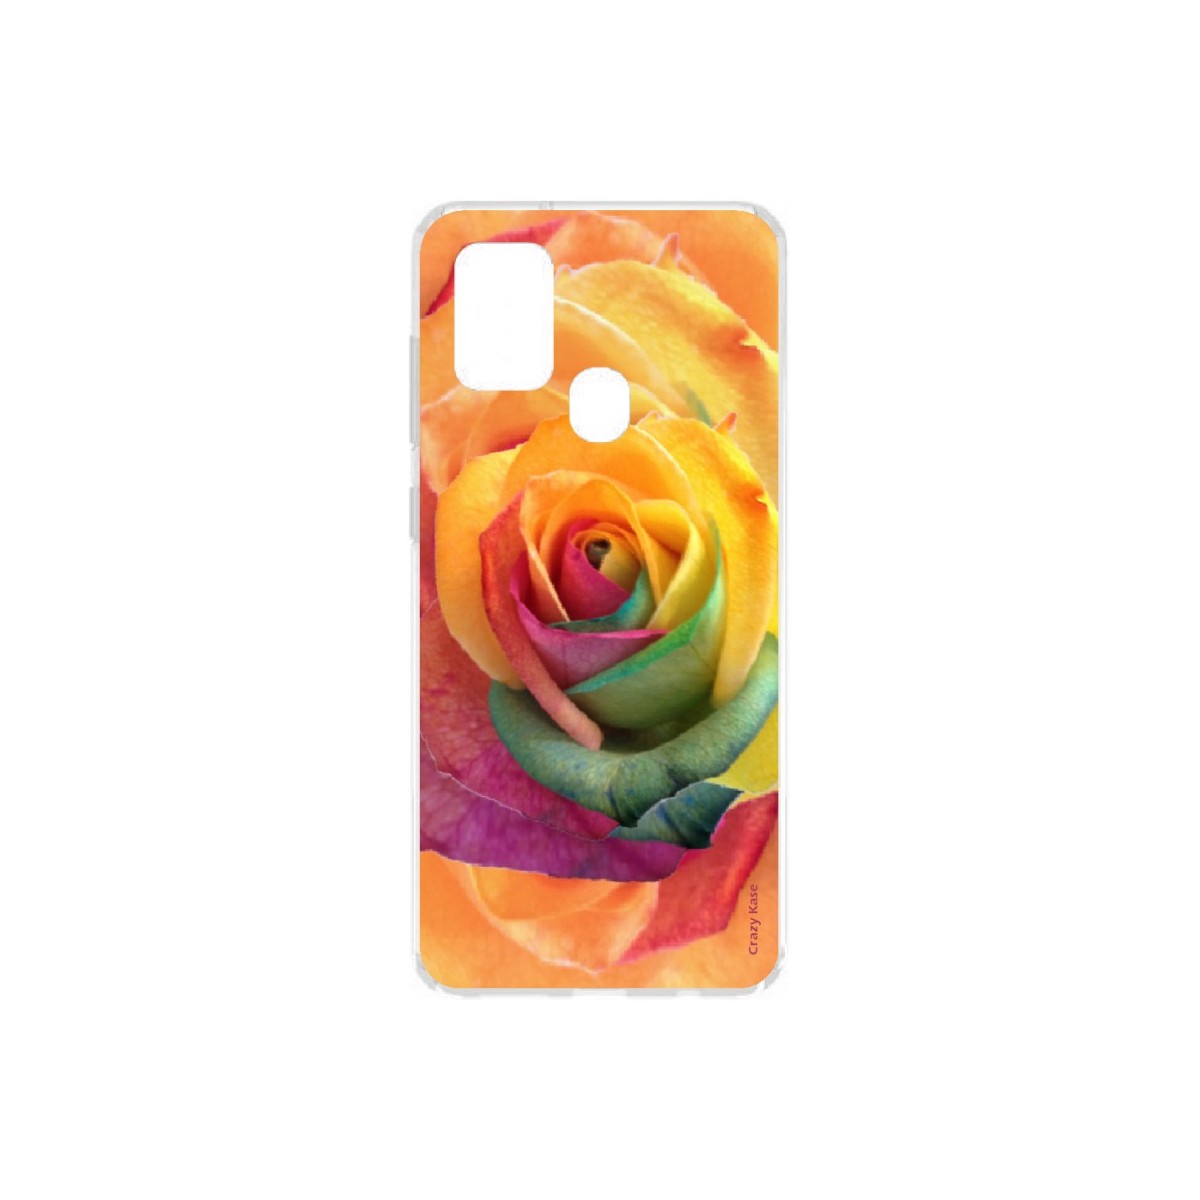 Coque Samsung Galaxy A21s souple Rose fleur colorée Crazy Kase